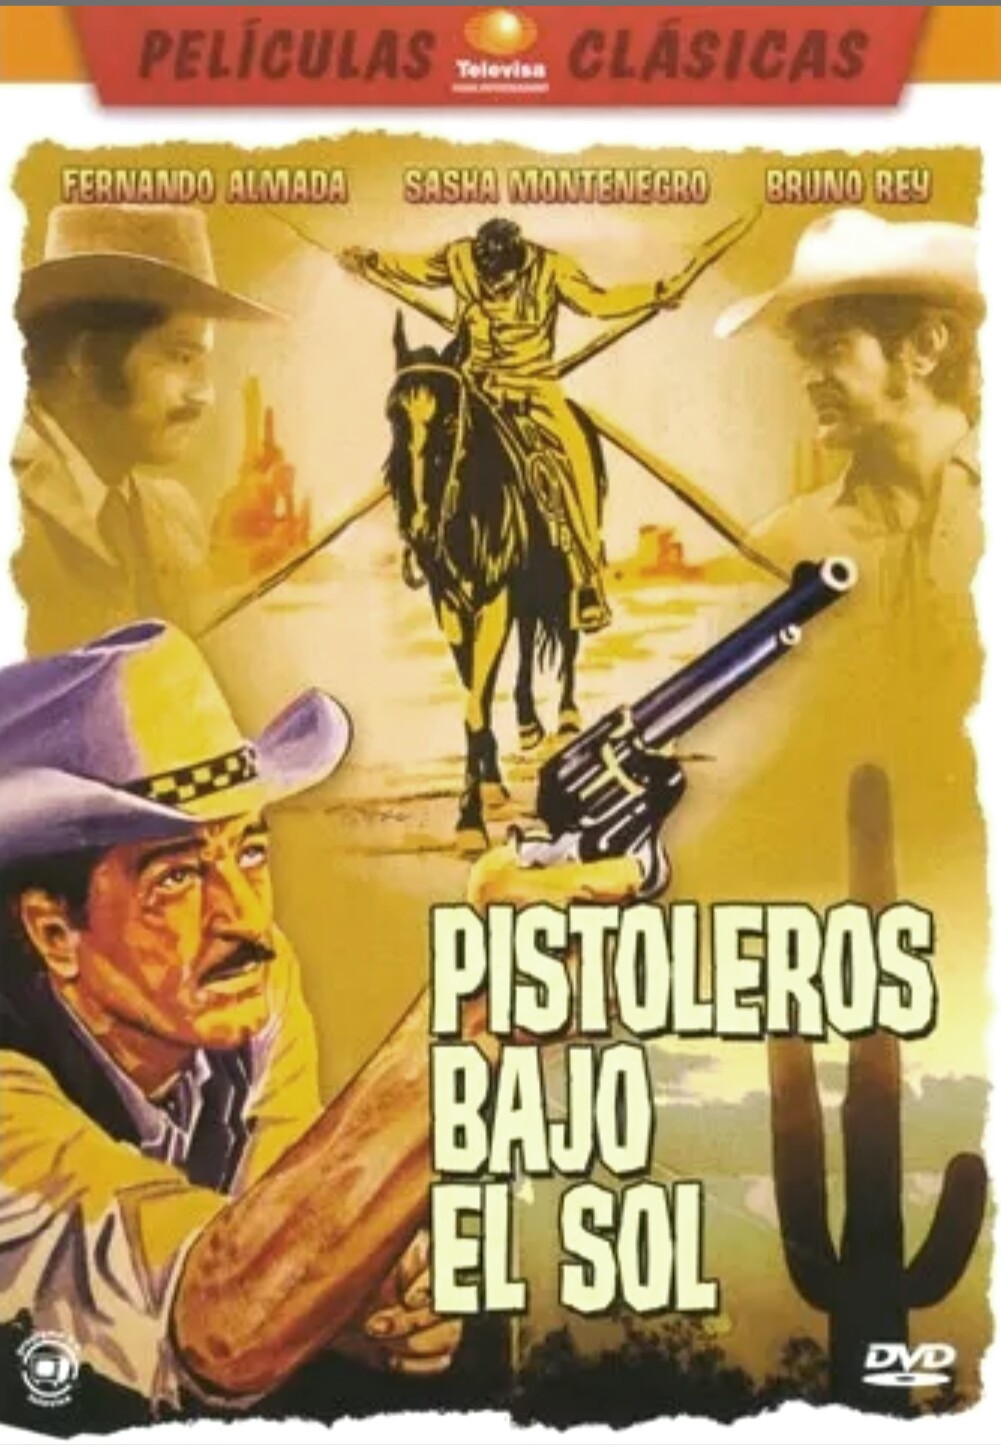 Pistoleros bajo el sol (1974) with English Subtitles on DVD on DVD